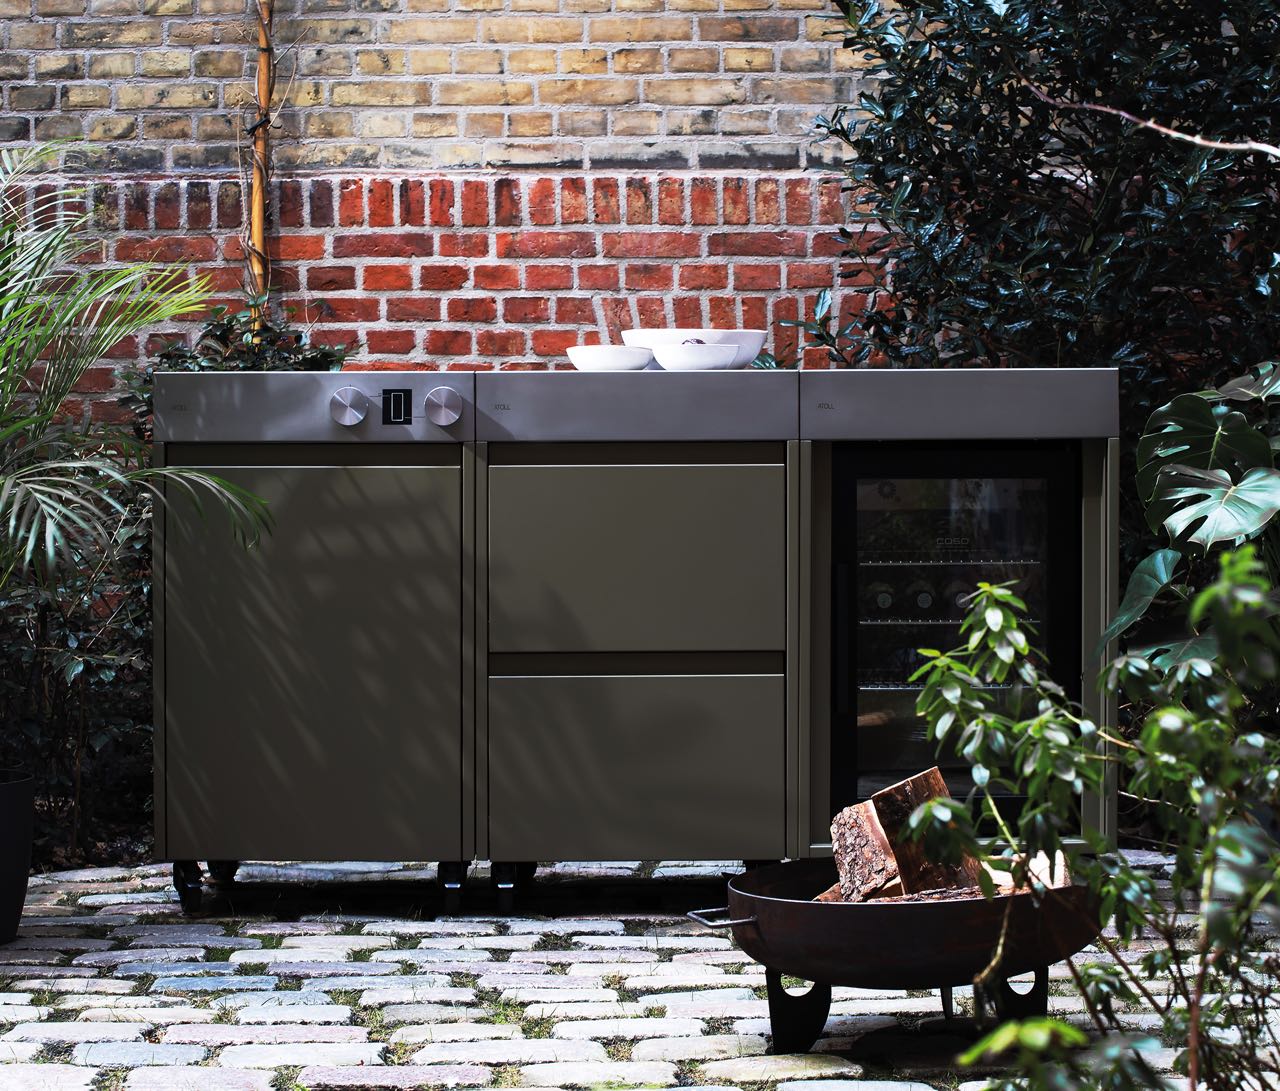 Die neue modulare Outdoorküche von ATOLL, einem Berliner Start-Up, schafft einen gemütlichen Platz an der frischen Luft für schöne Stunden, die von Geselligkeit und Genuss geprägt sind.